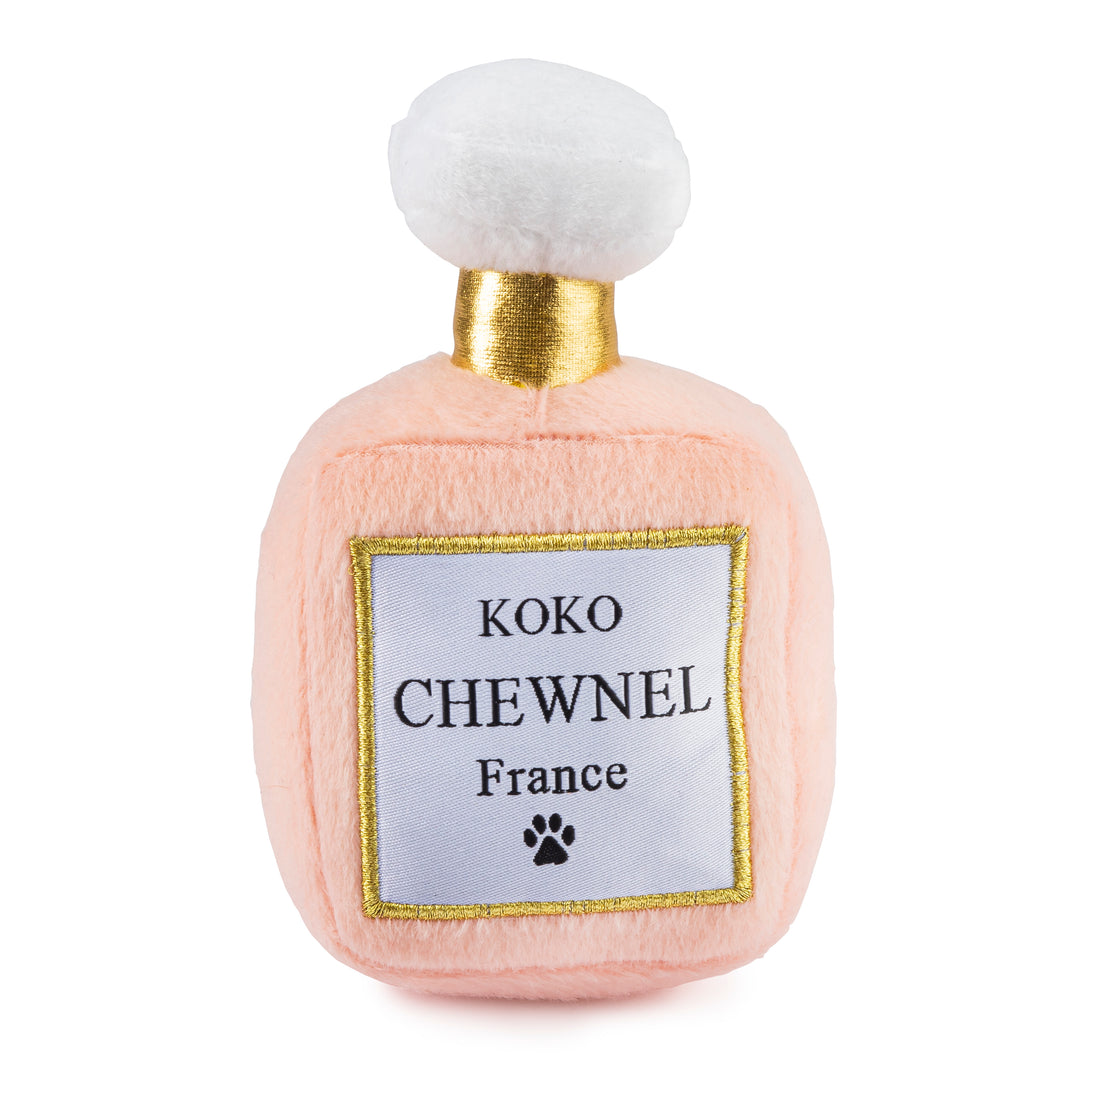 Koko Chewnel France Perfume